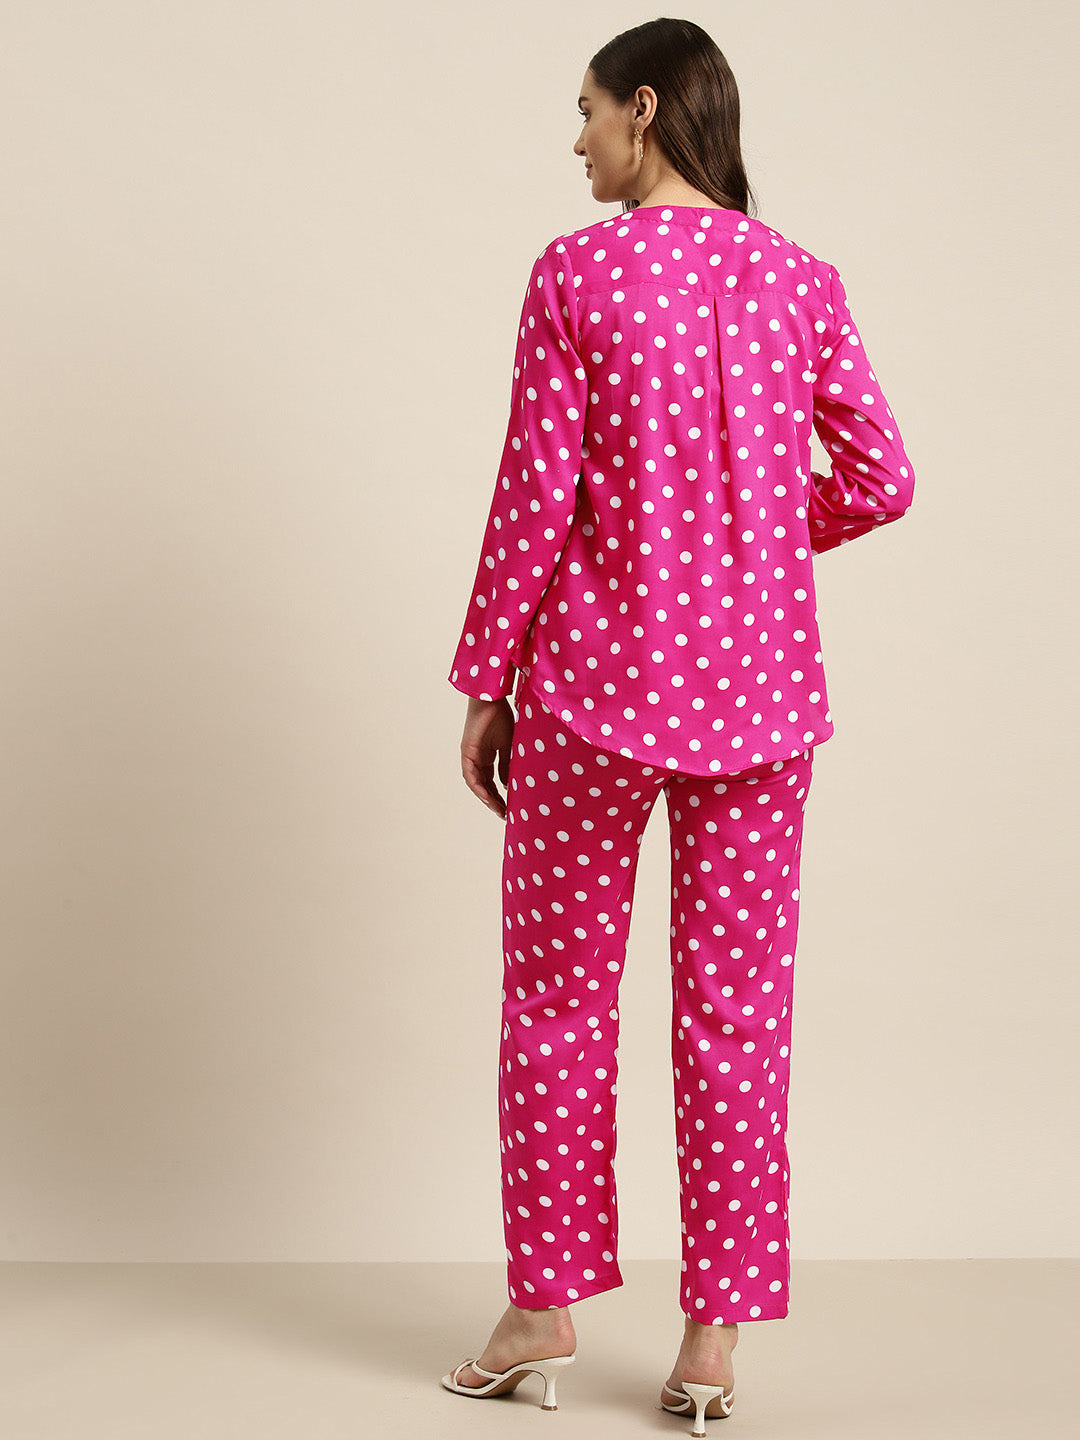 Hot pink & white polka crepe shirt and pant set